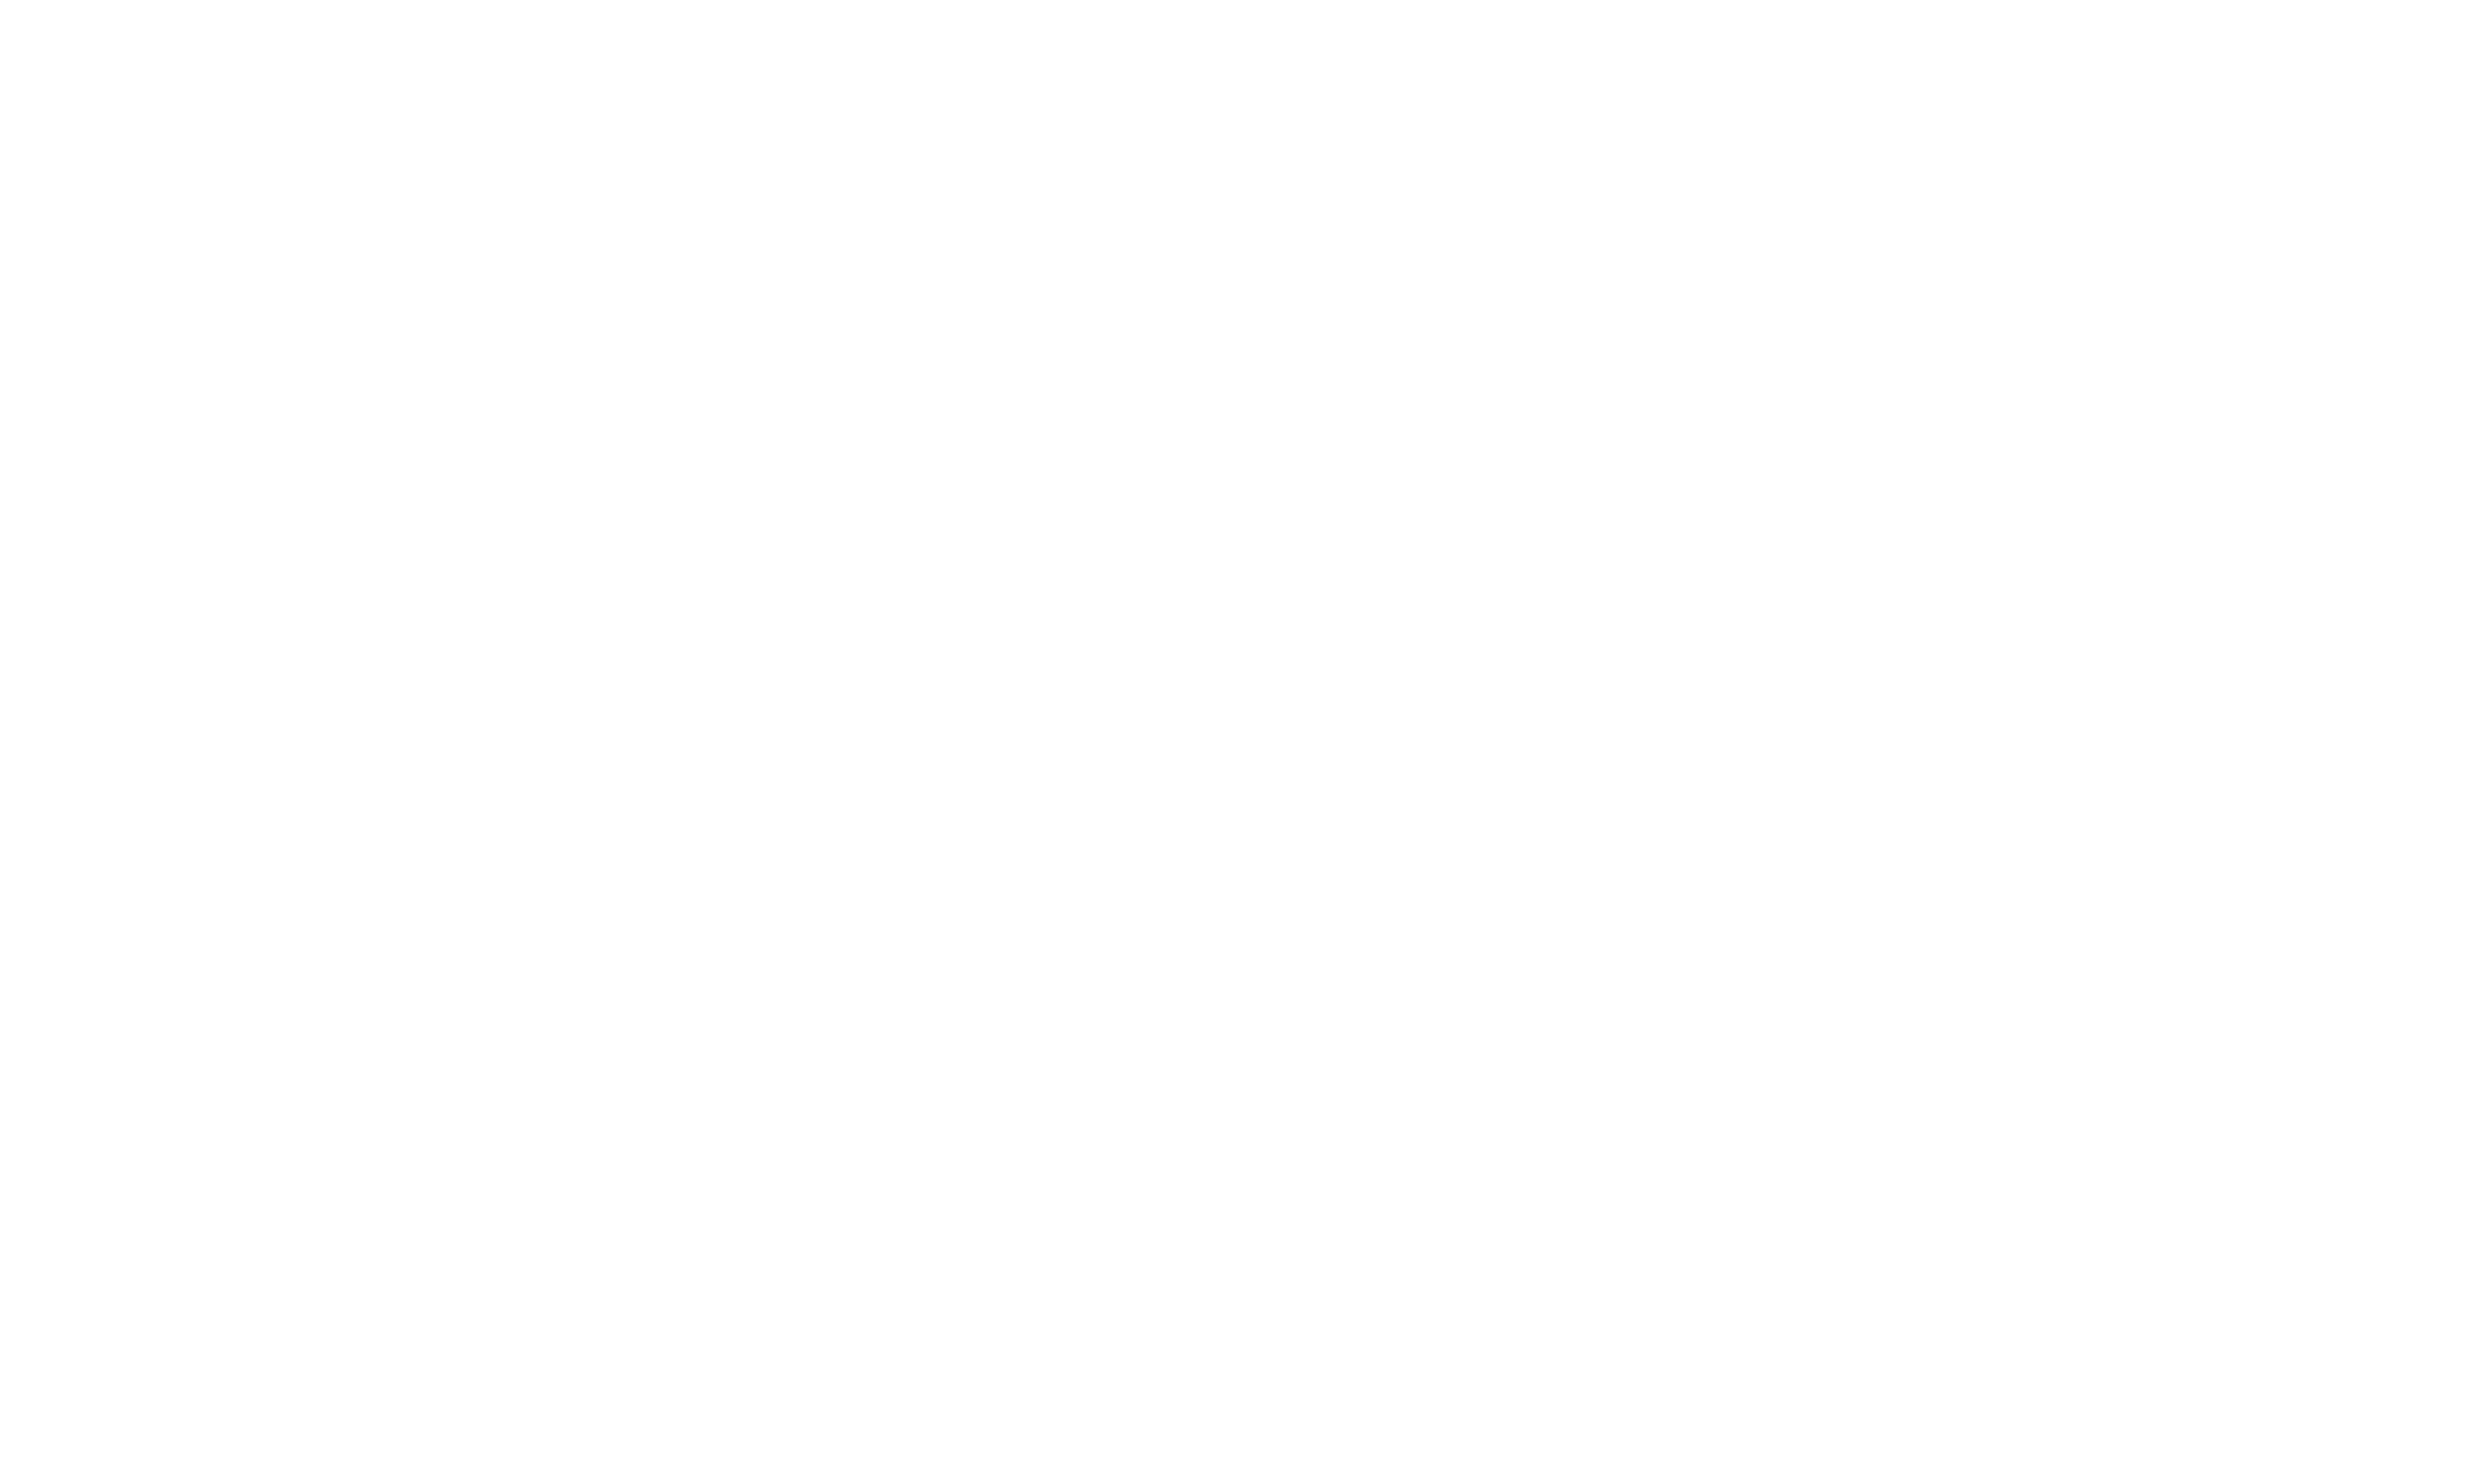 RackTop BrickStor Security Platform